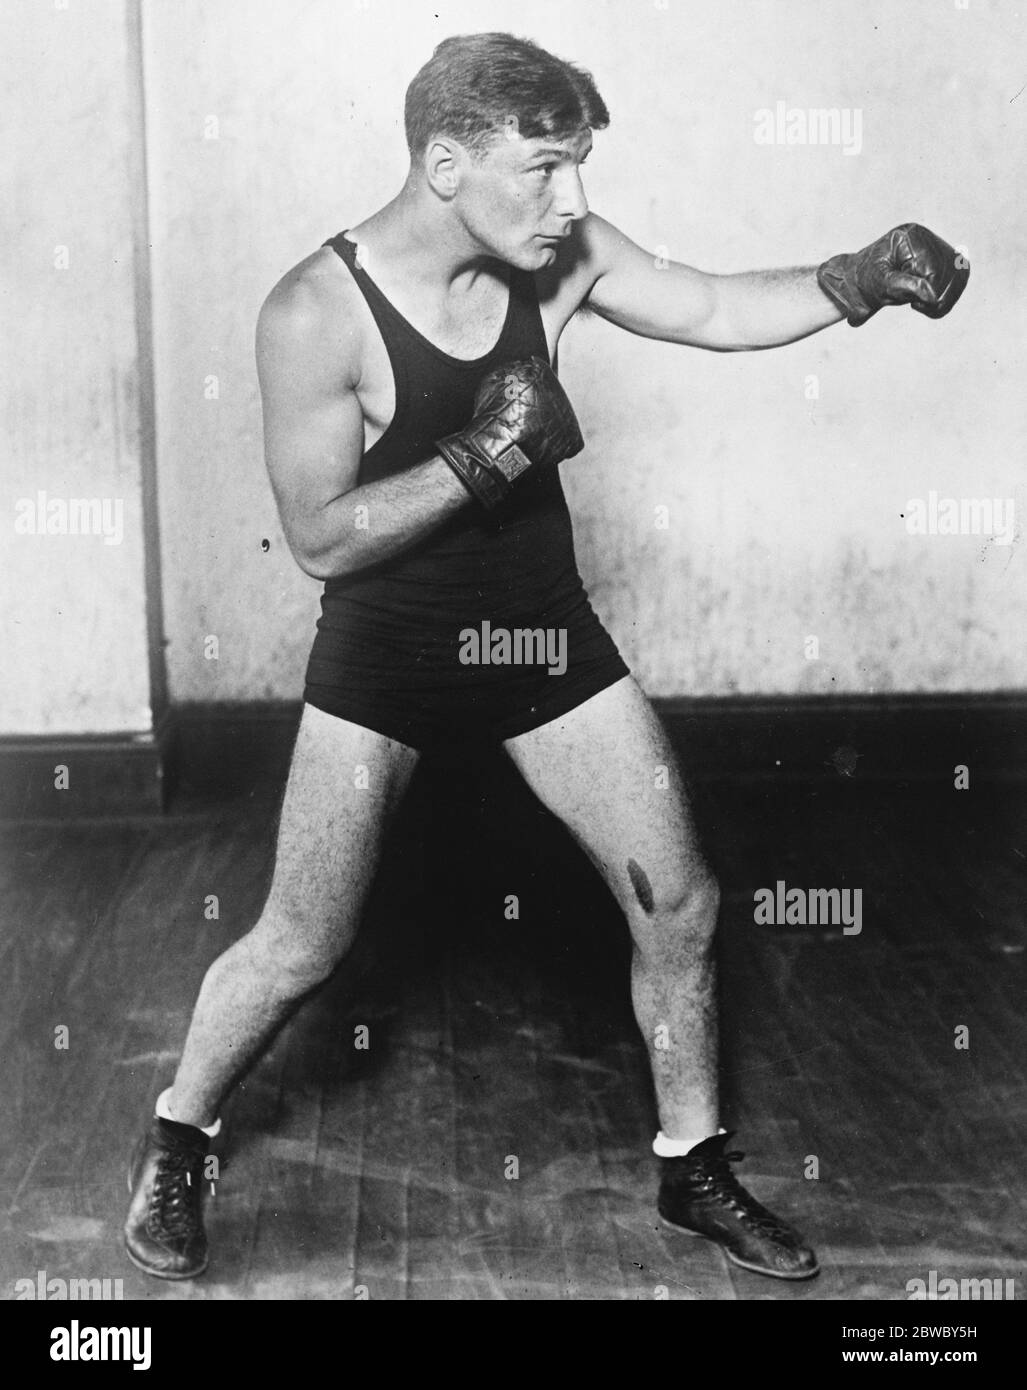 Life Suspension der Welt ' s bantam Gewichtssieger . Charlie (Phil) Rosenberg, der New Yorrk Inhaber der Welt ' s bantam Gewichtsmeisterschaft, wurde für das Leben von der Illinois Boxing Commission disqualifiziert. 18. September 1926 Stockfoto